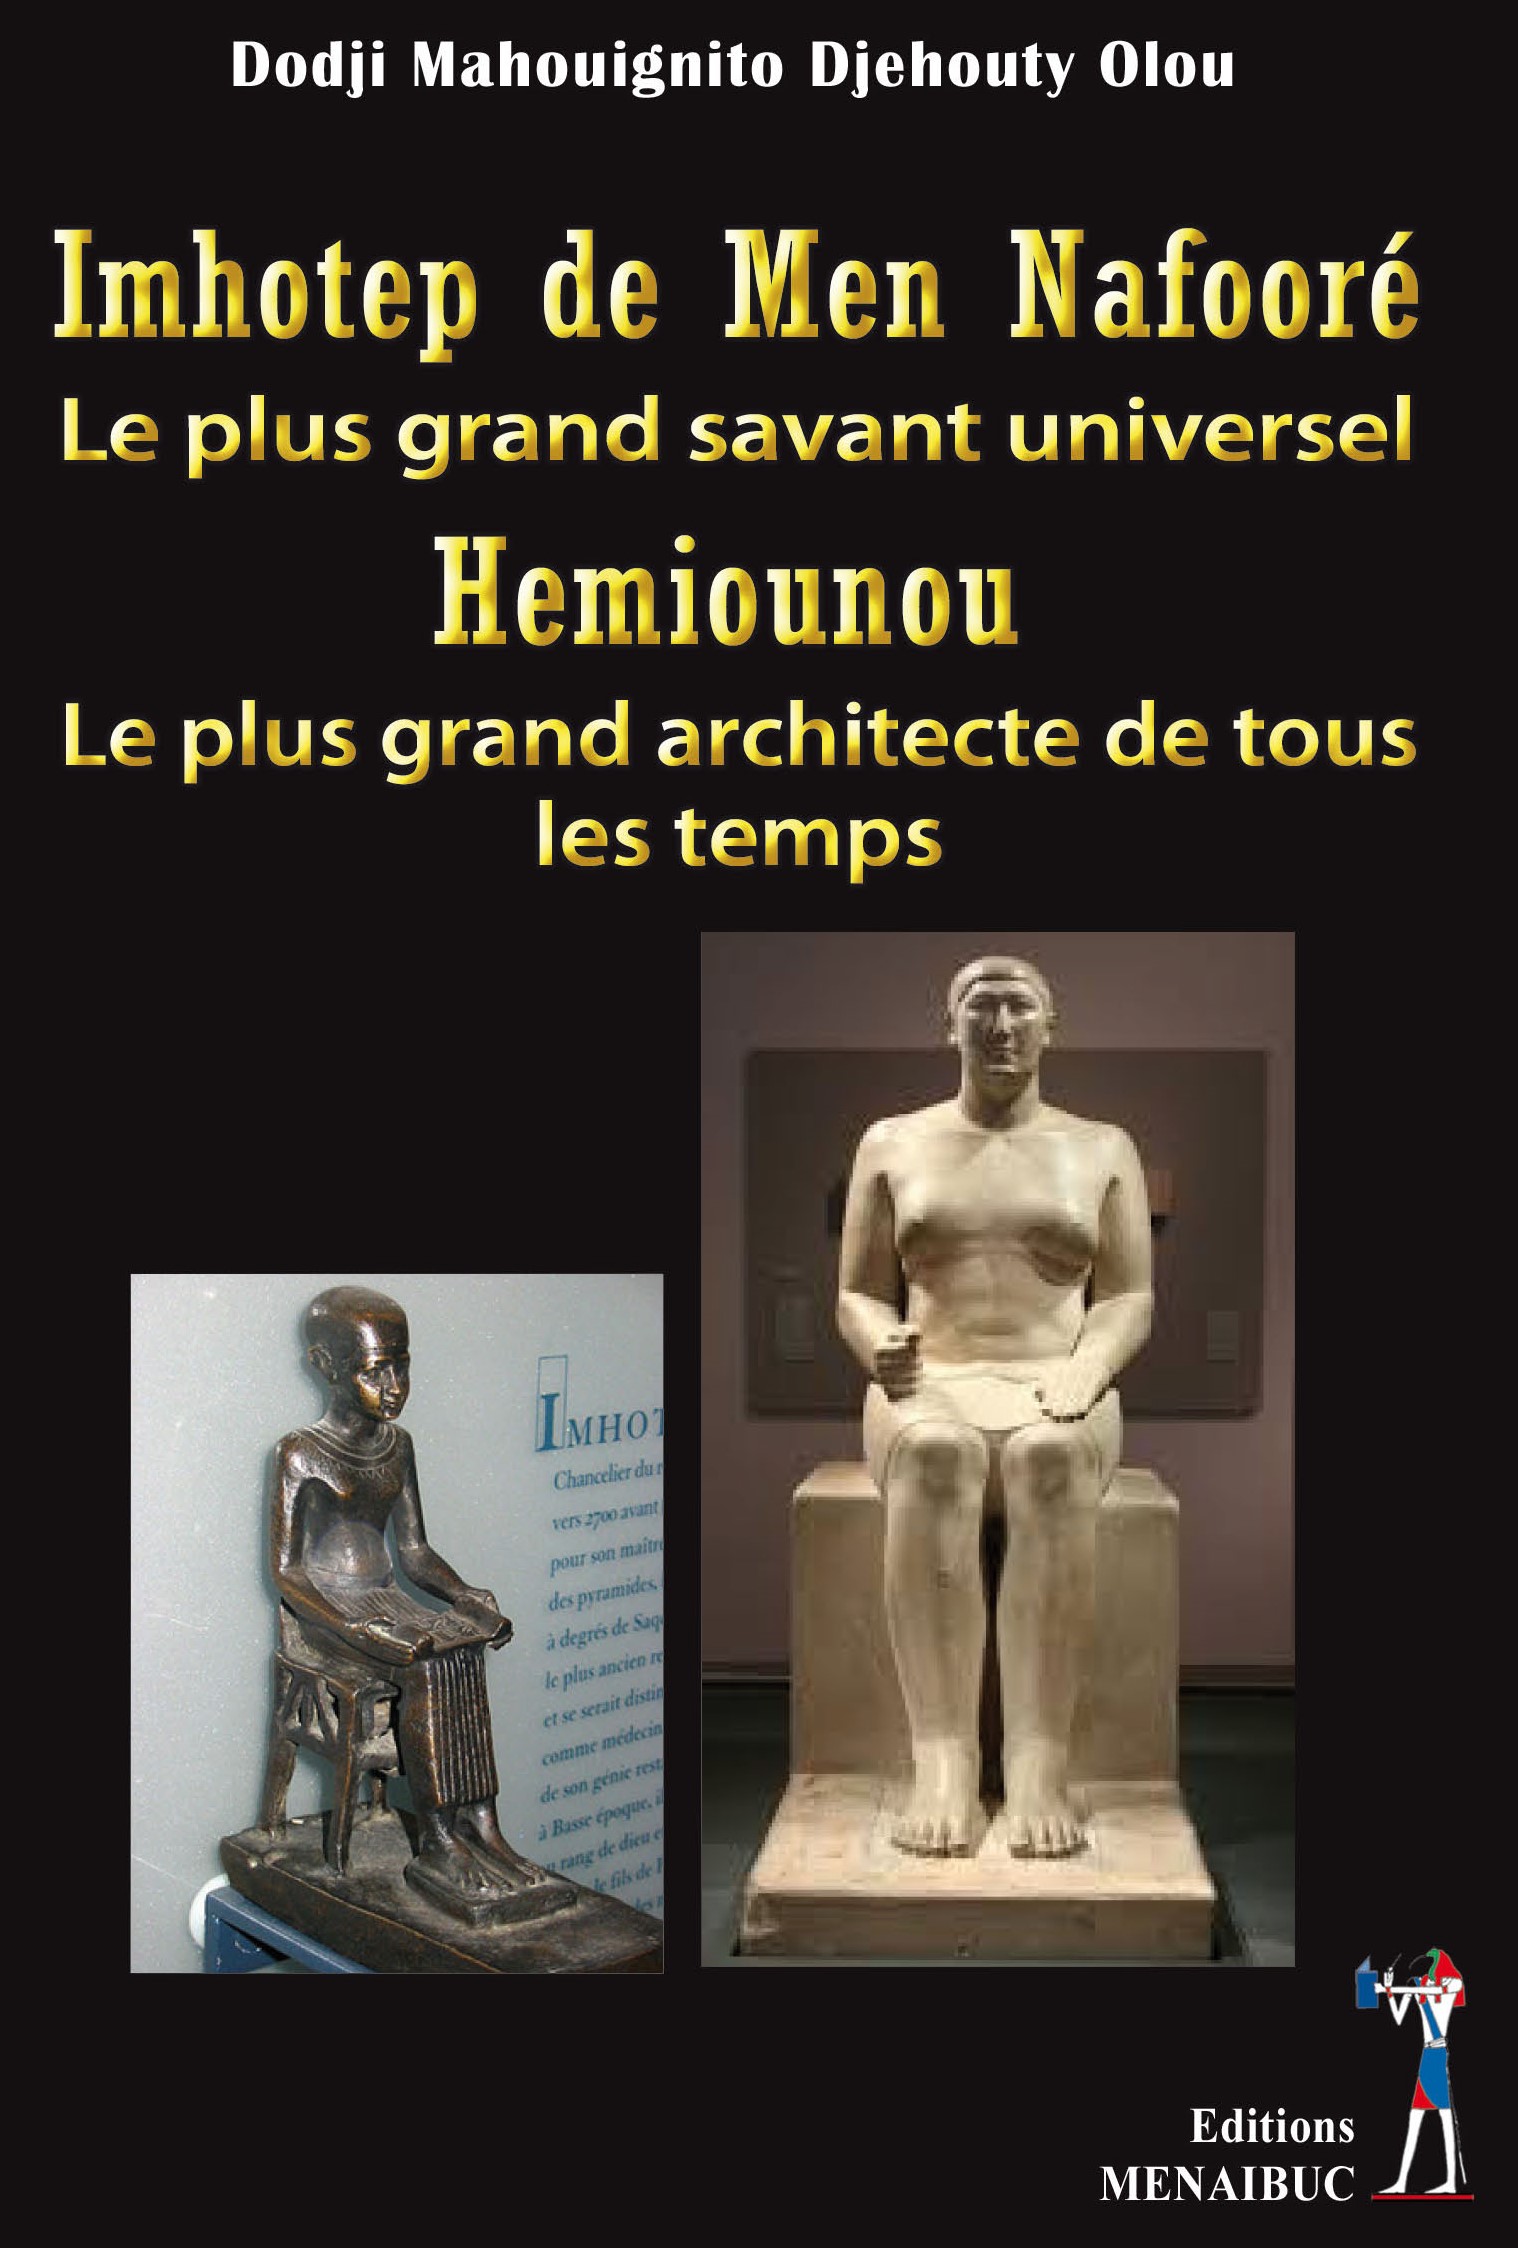 Imhotep de Men Nafooré,  le plus grand savant universel.  Hemiounou,  le plus grand architecte  de tous les temps.